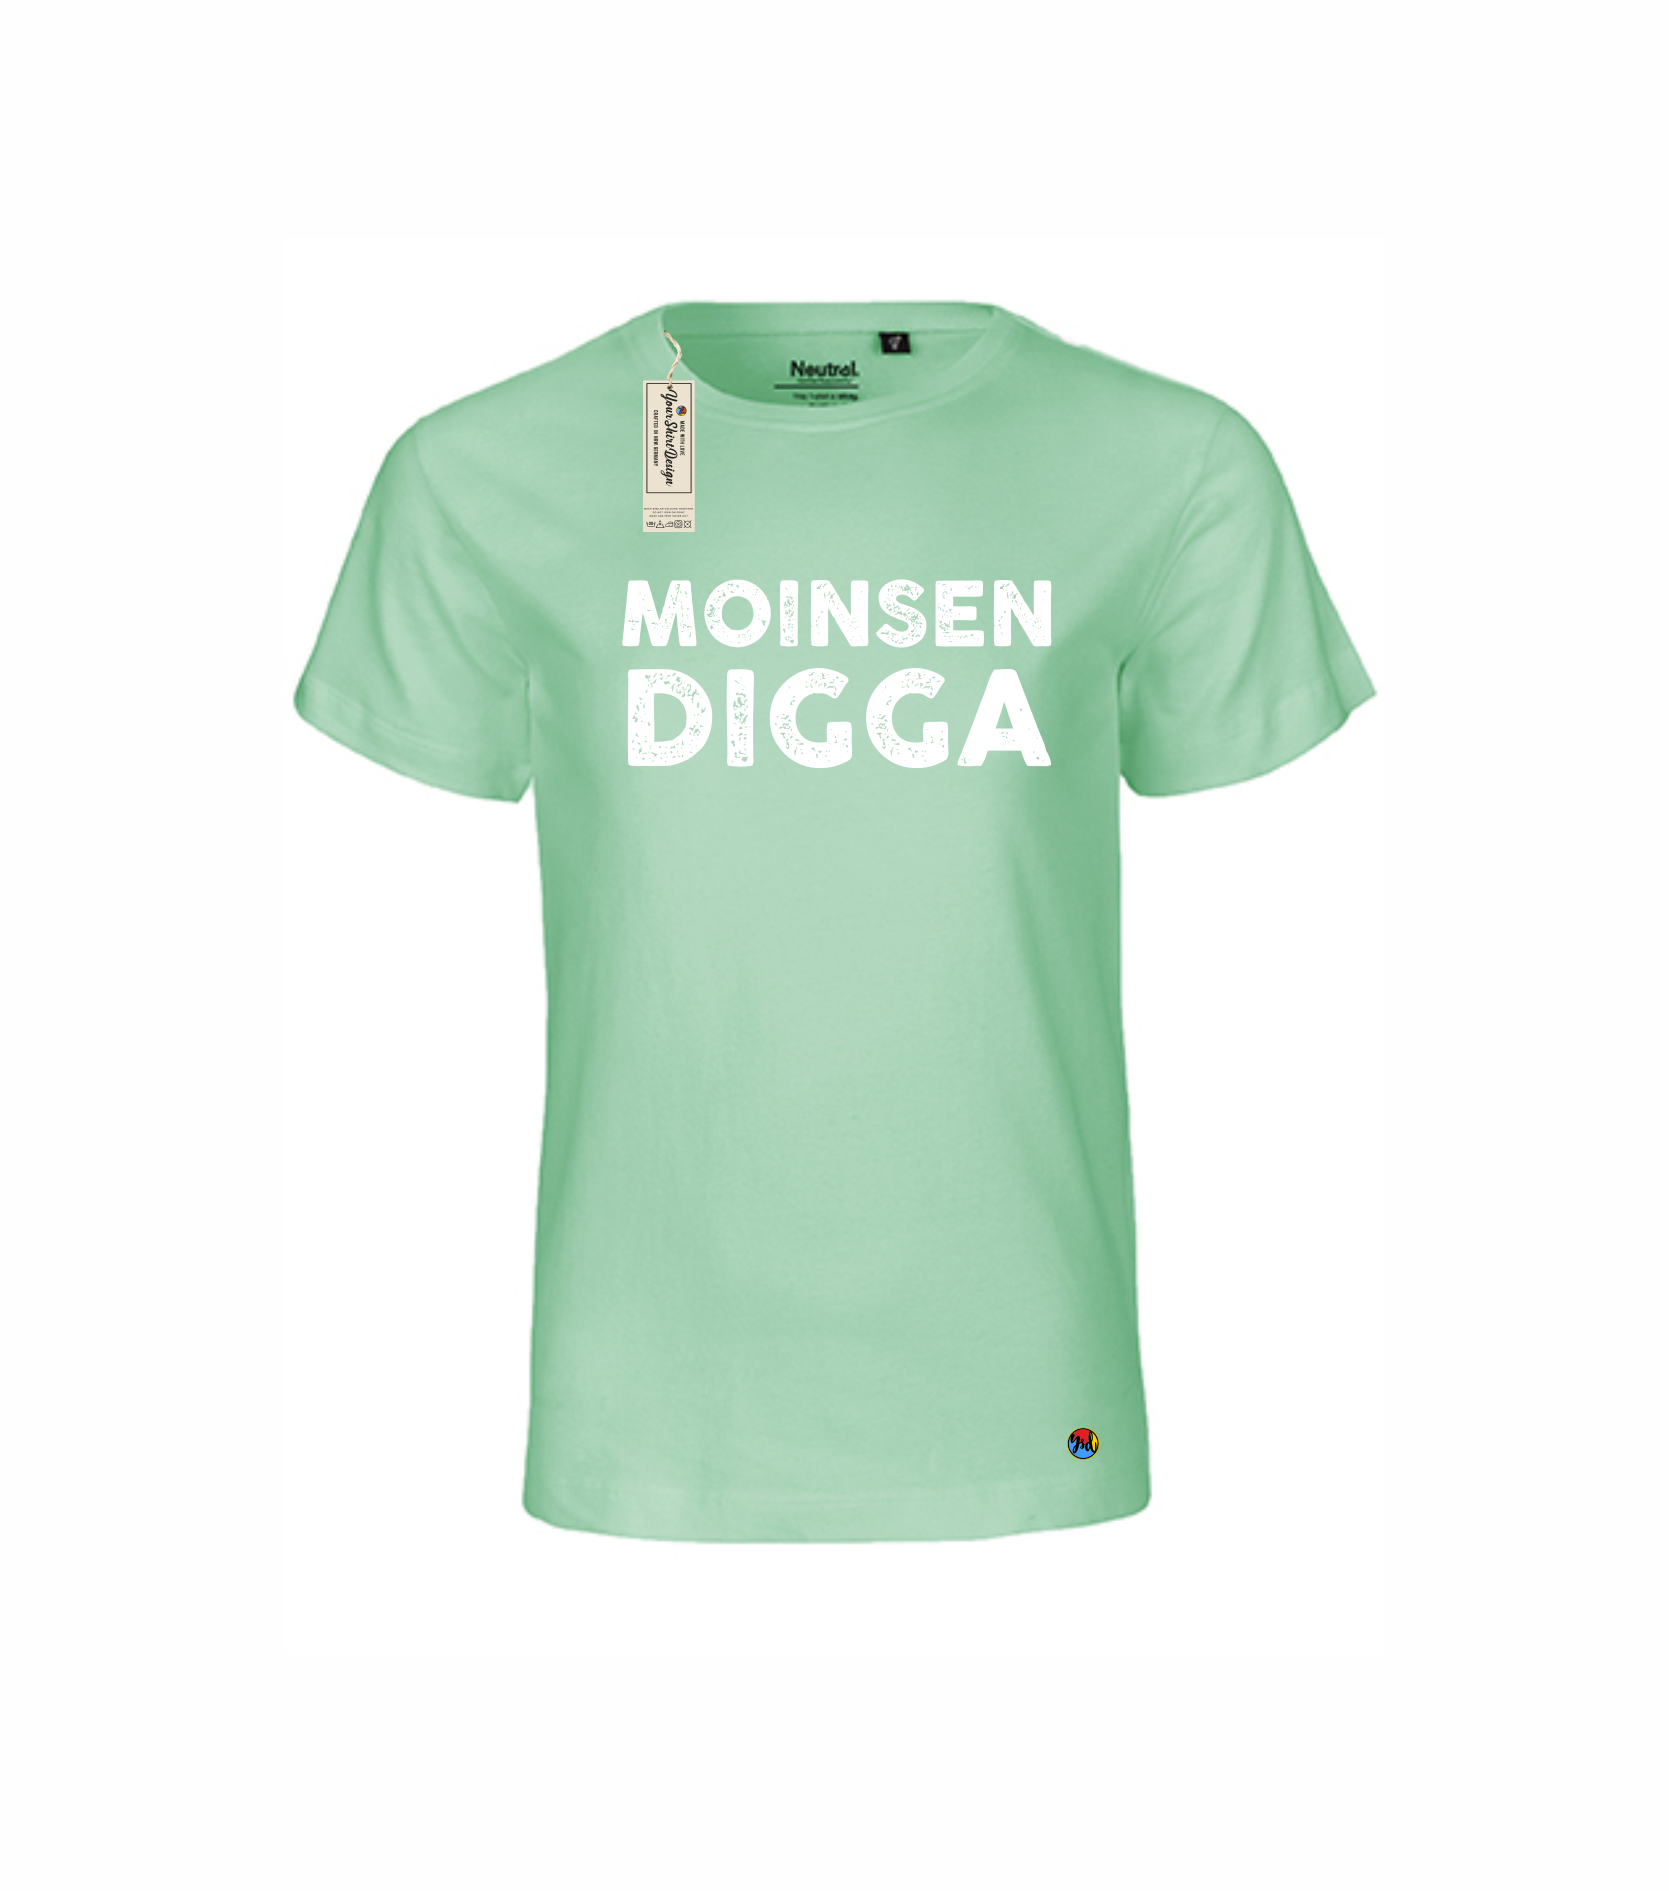 MOINSEN DIGGA Kinder — (verschiedene Shirt Farben) Your Design T-Shirt